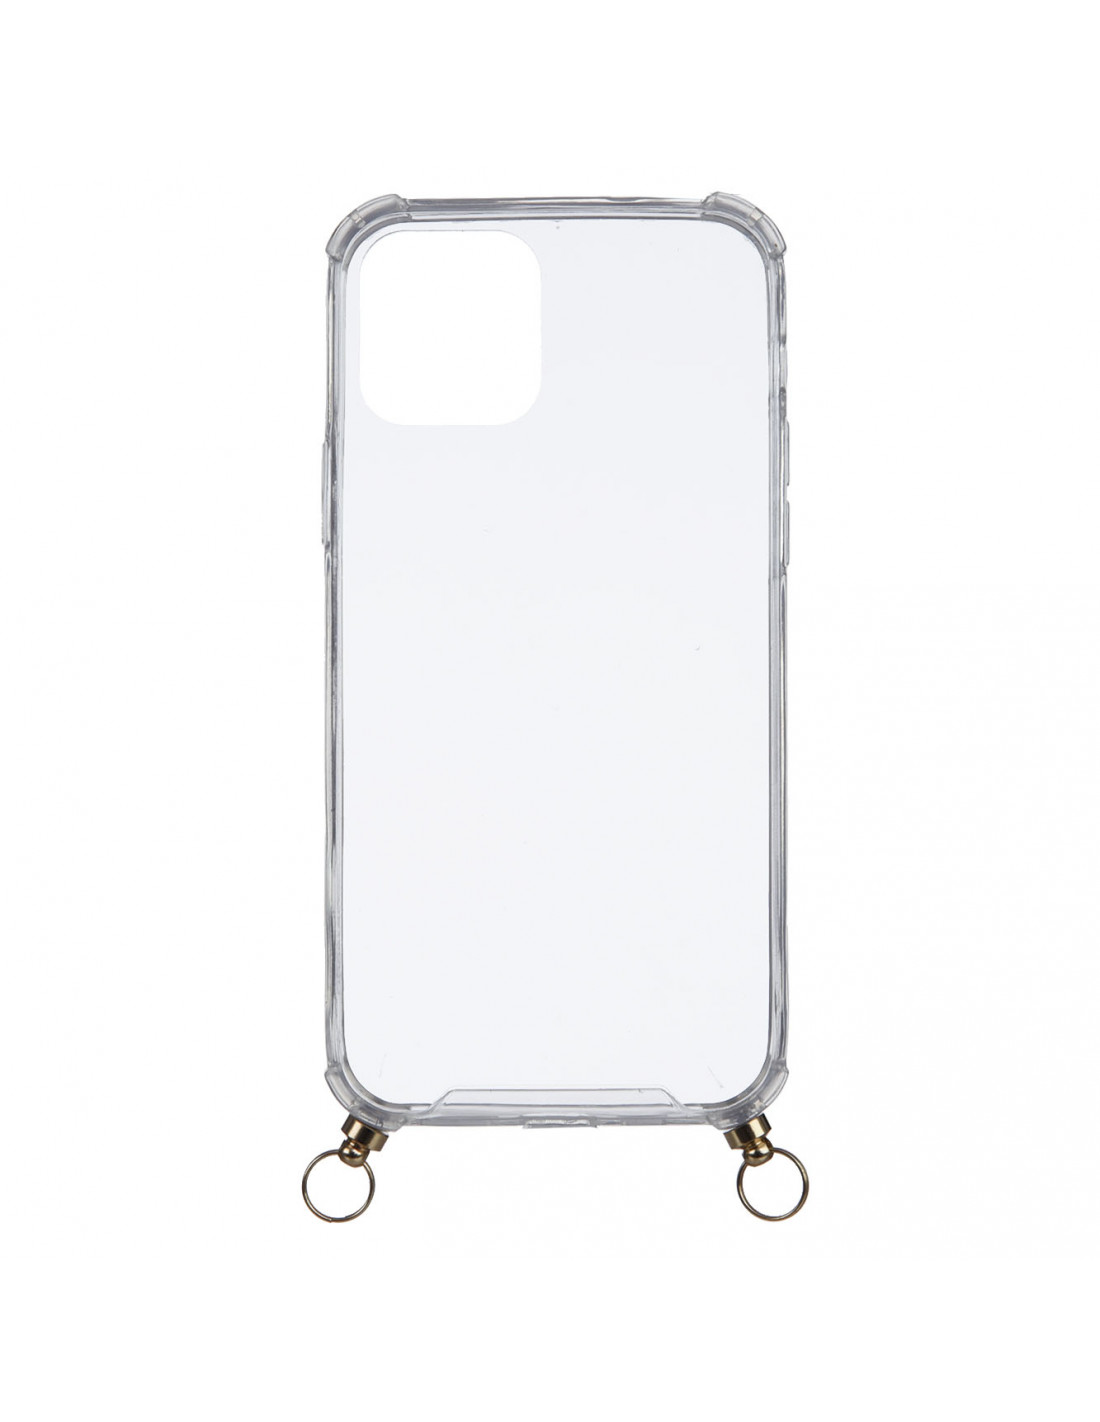 Funda transparente colgante para Iphone 12 Mini. - ENVIO GRATIS